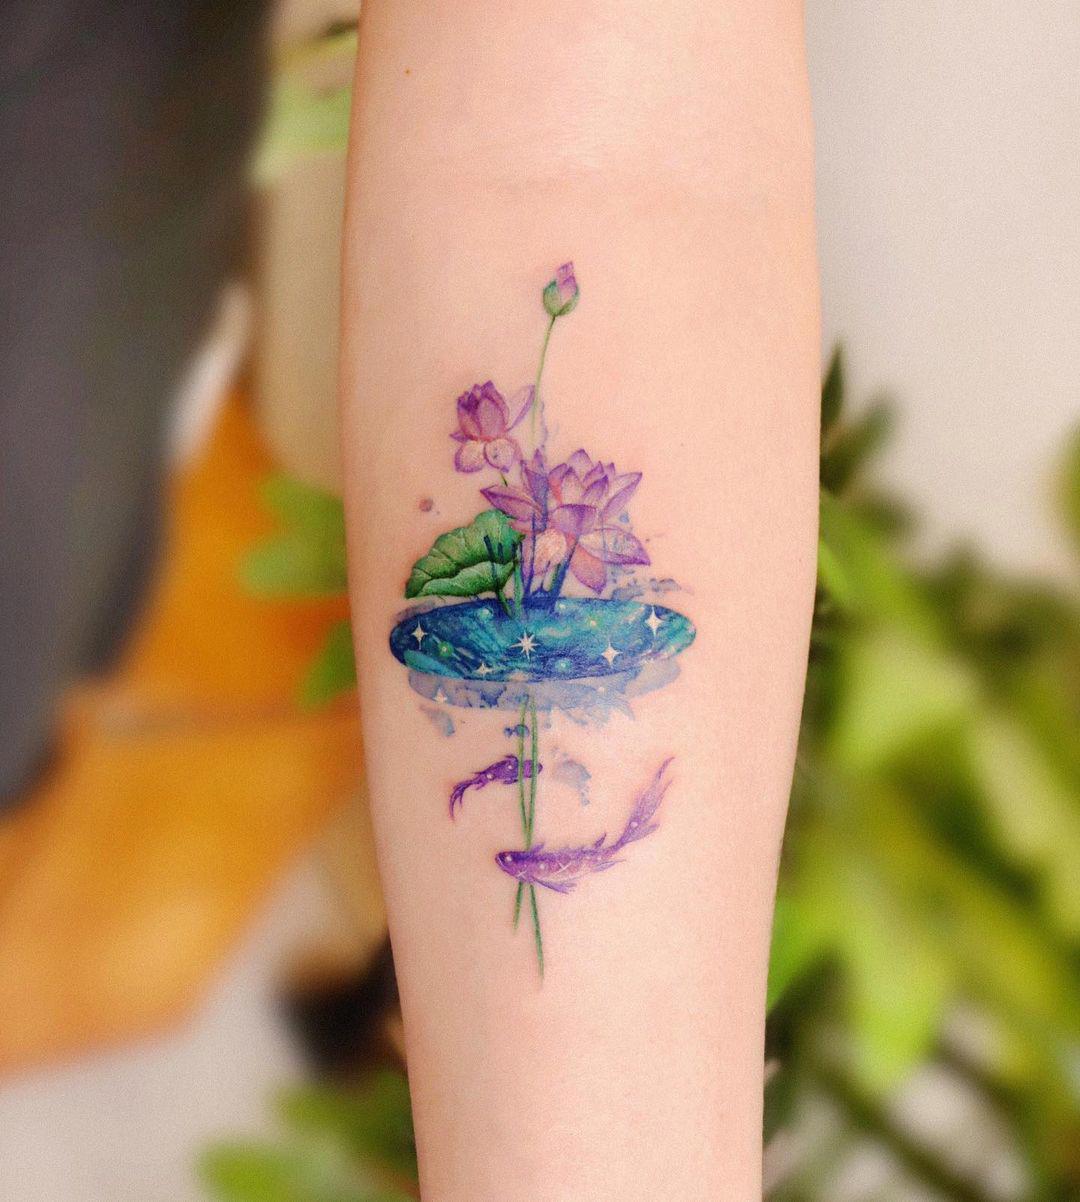 Un tattoo ‘watercolor’ que representa una flor de loto